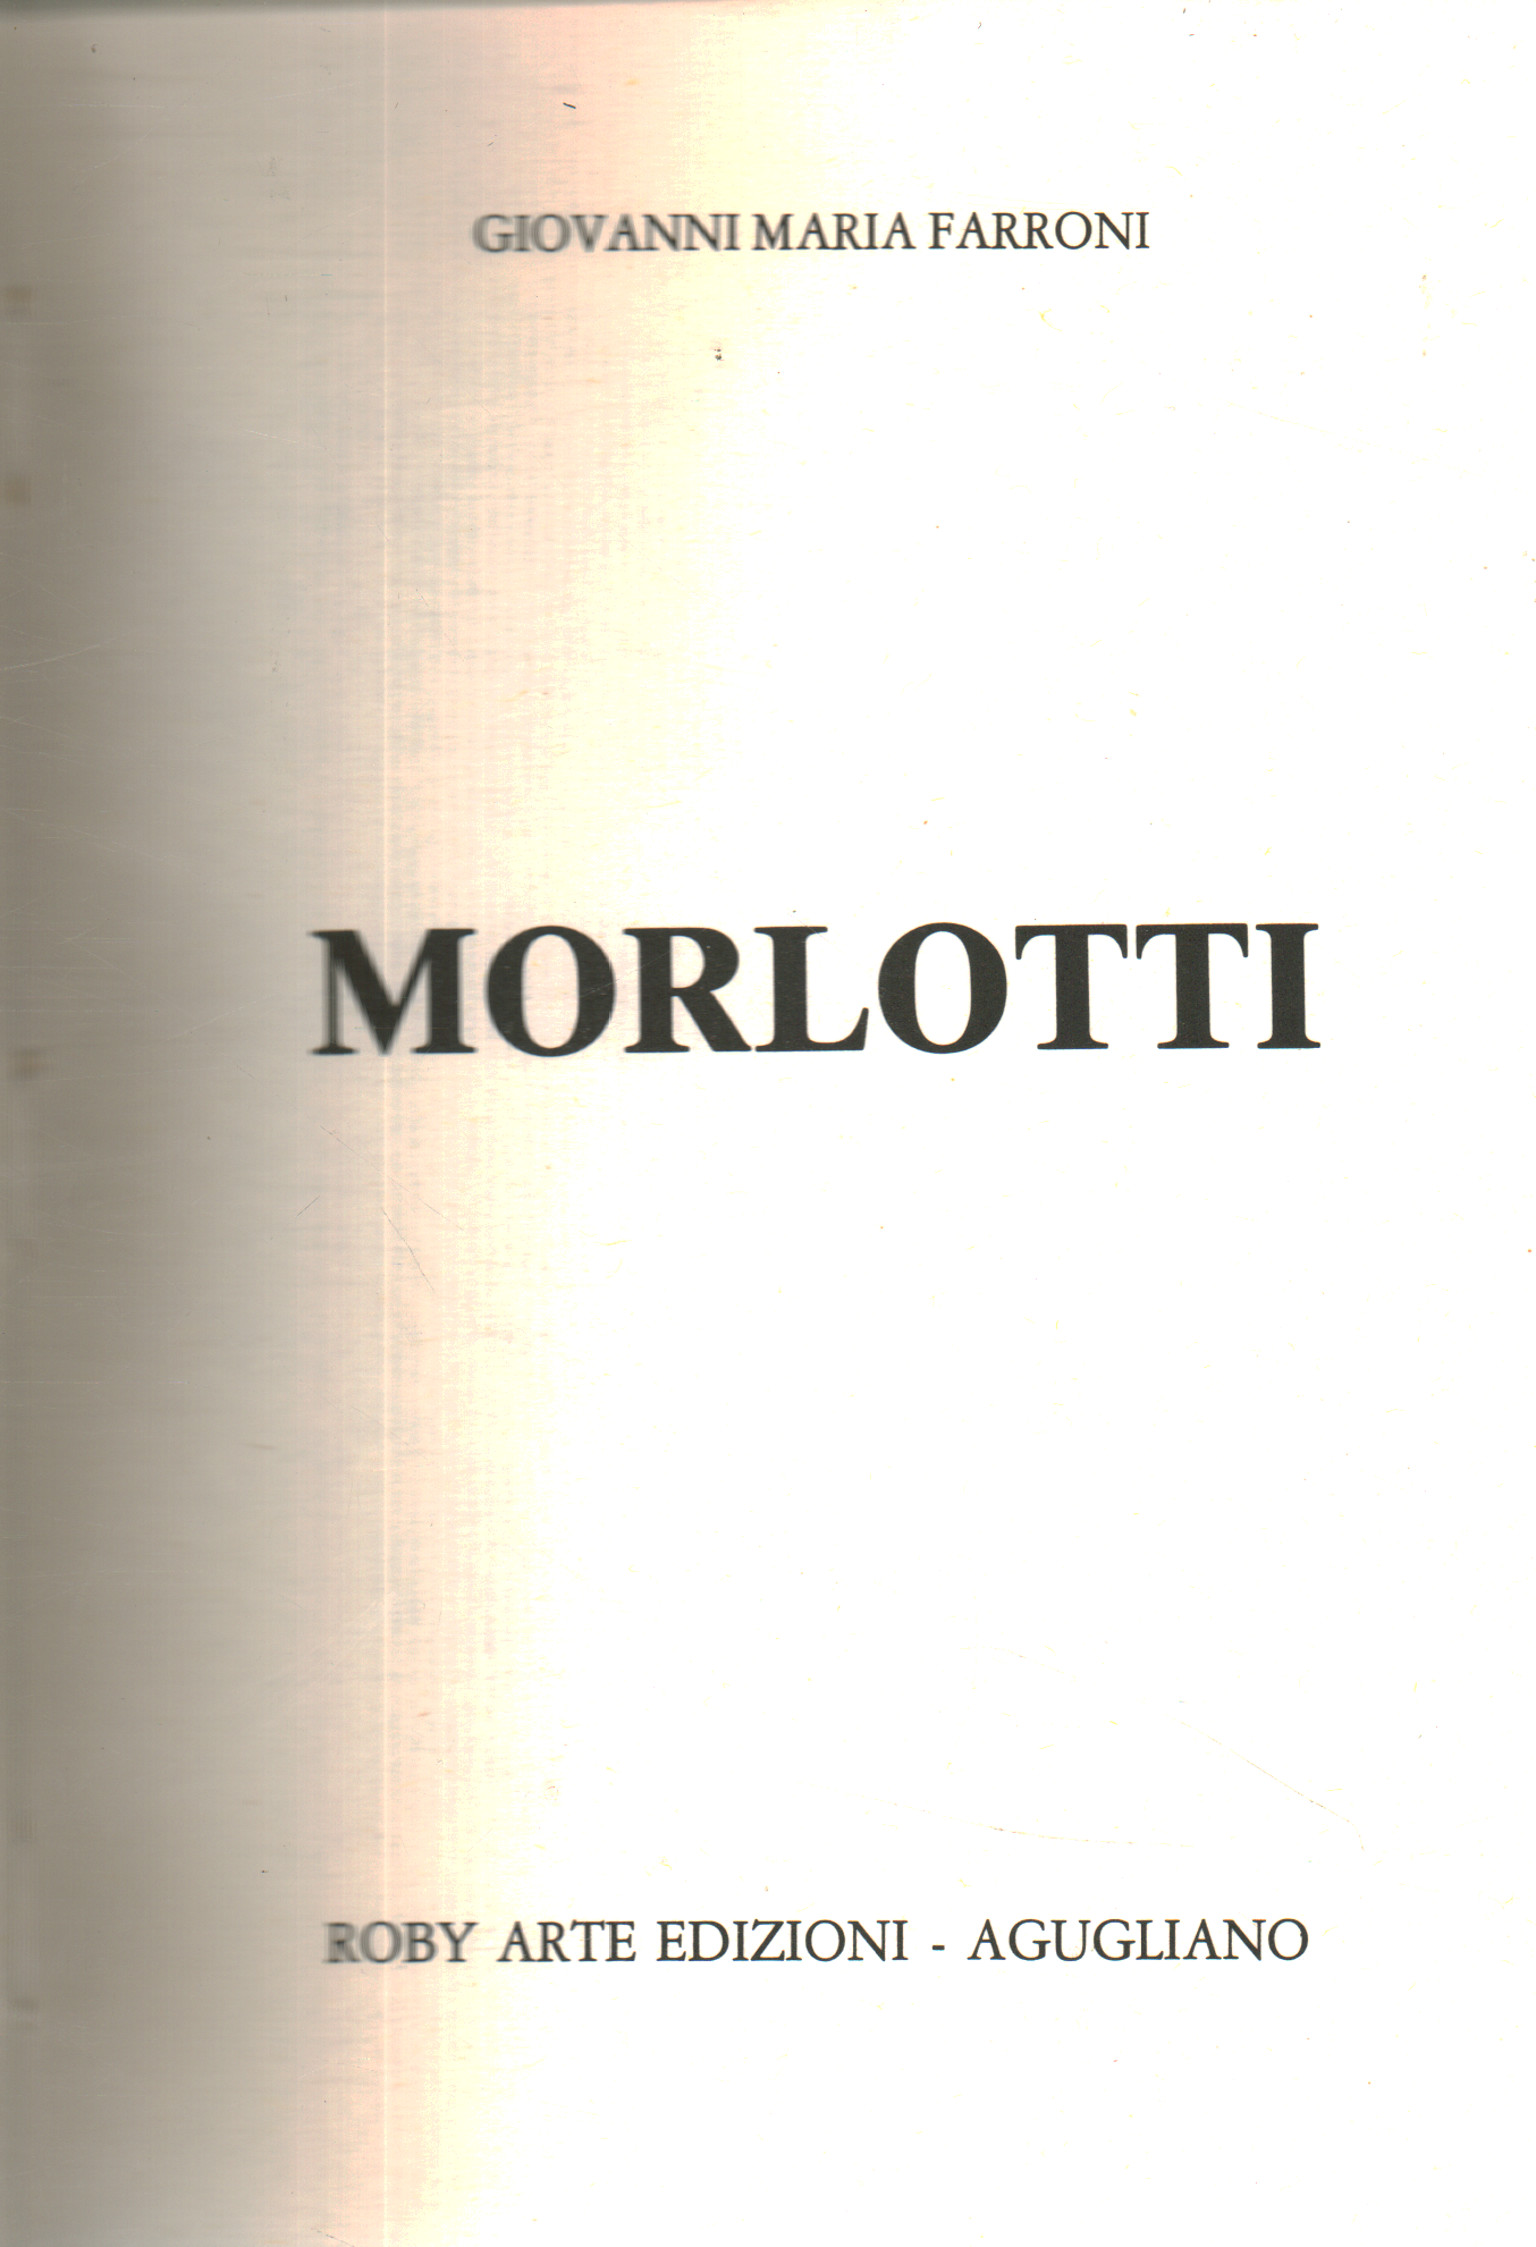 Morlotti